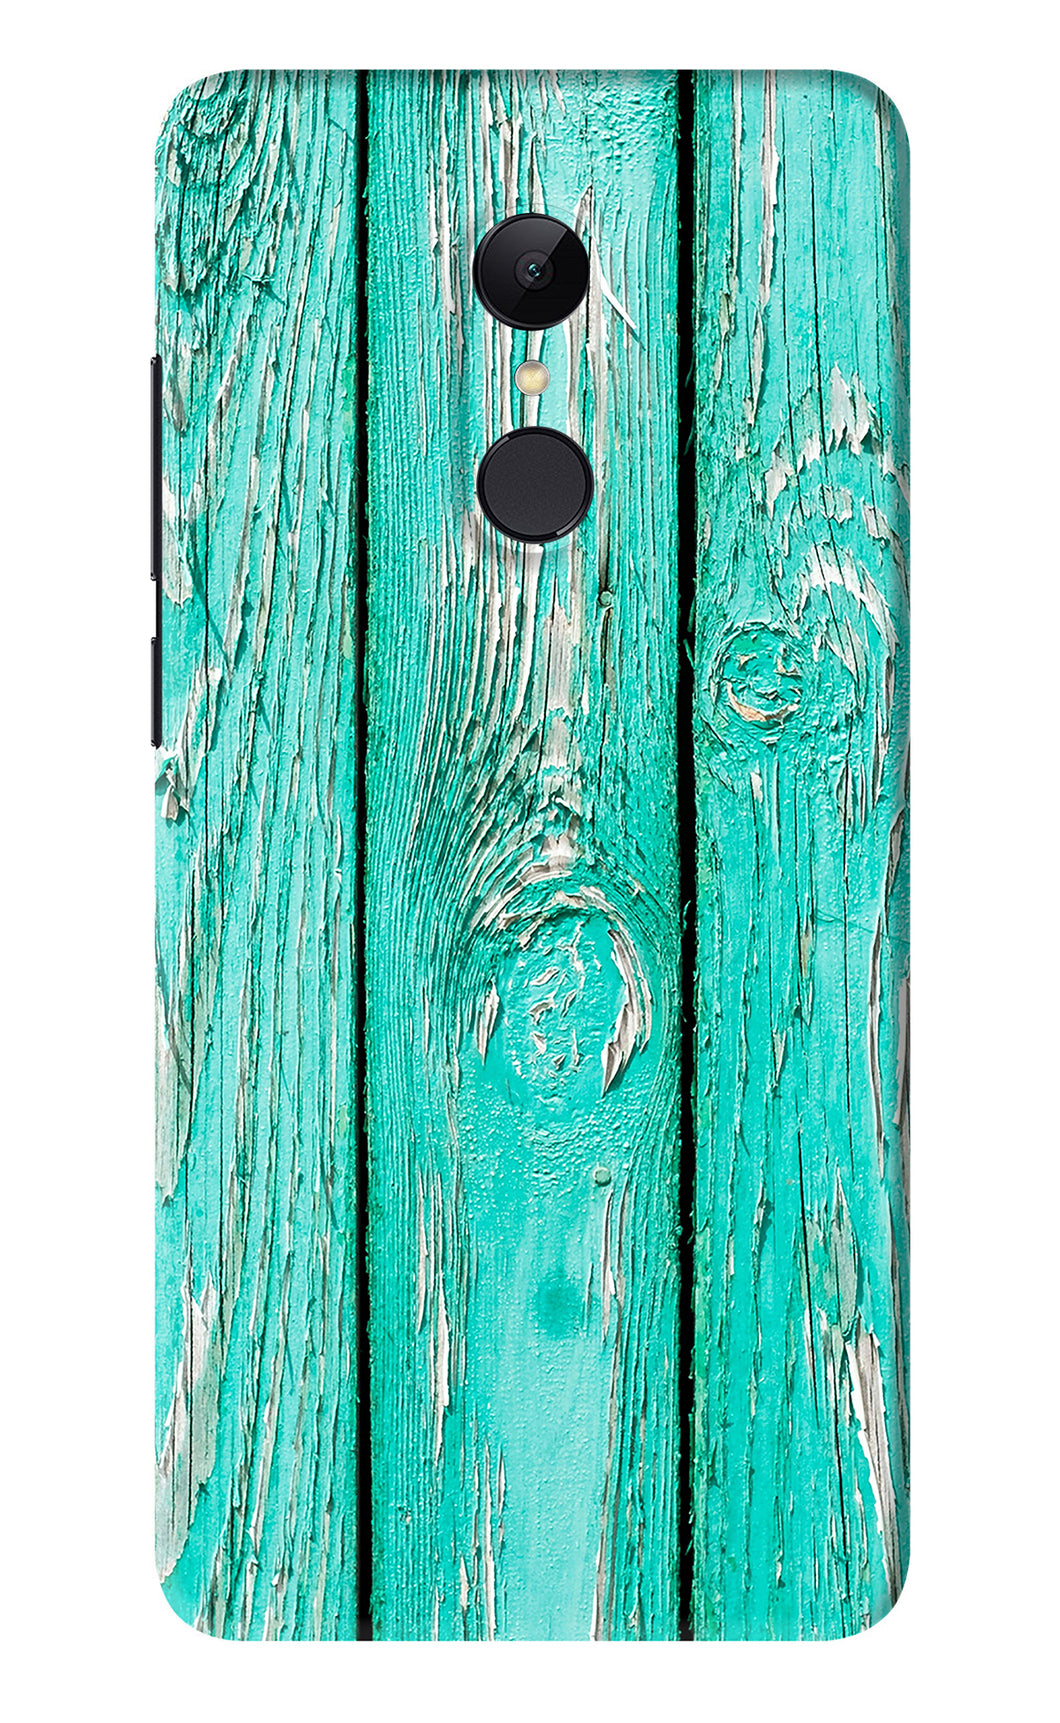 Blue Wood Xiaomi Redmi Note 4 Back Skin Wrap